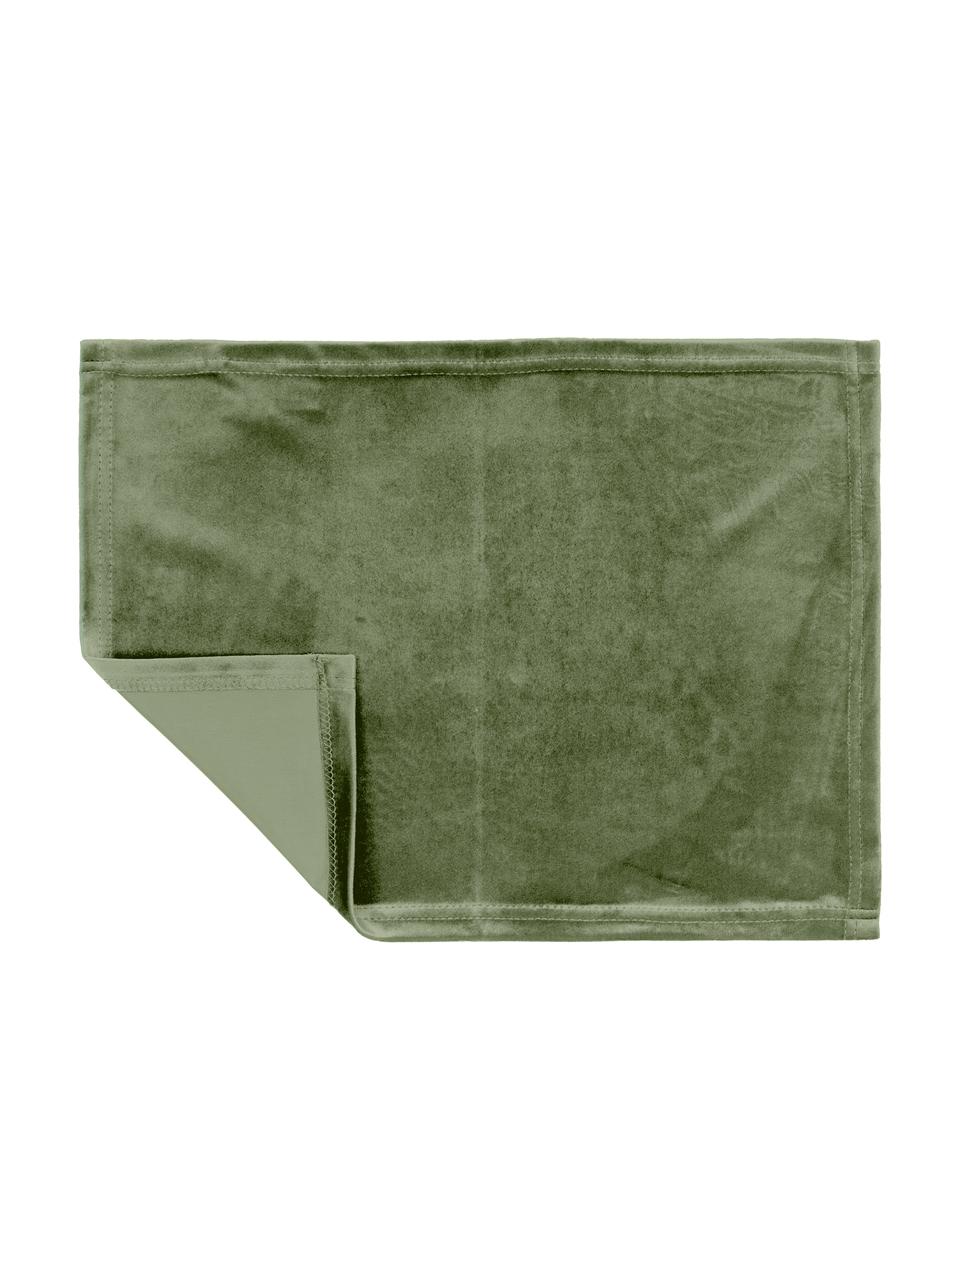 Samt-Tischsets Simone in Olivgrün, 2 Stück, 100% Polyestersamt, Olivgrün, 35 x 45 cm